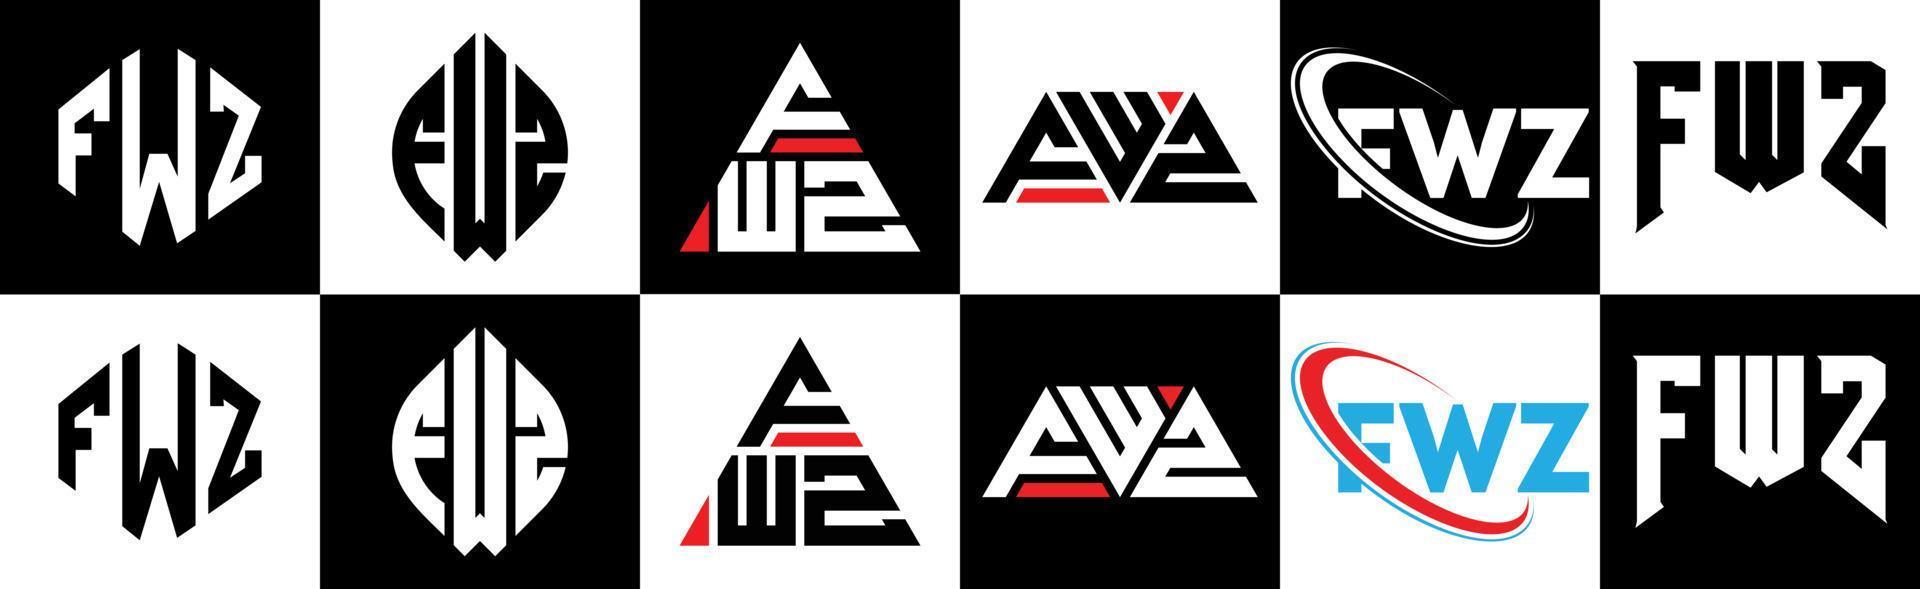 fwz-Buchstaben-Logo-Design in sechs Stilen. fwz Polygon, Kreis, Dreieck, Sechseck, flacher und einfacher Stil mit schwarz-weißem Buchstabenlogo in einer Zeichenfläche. fwz minimalistisches und klassisches Logo vektor